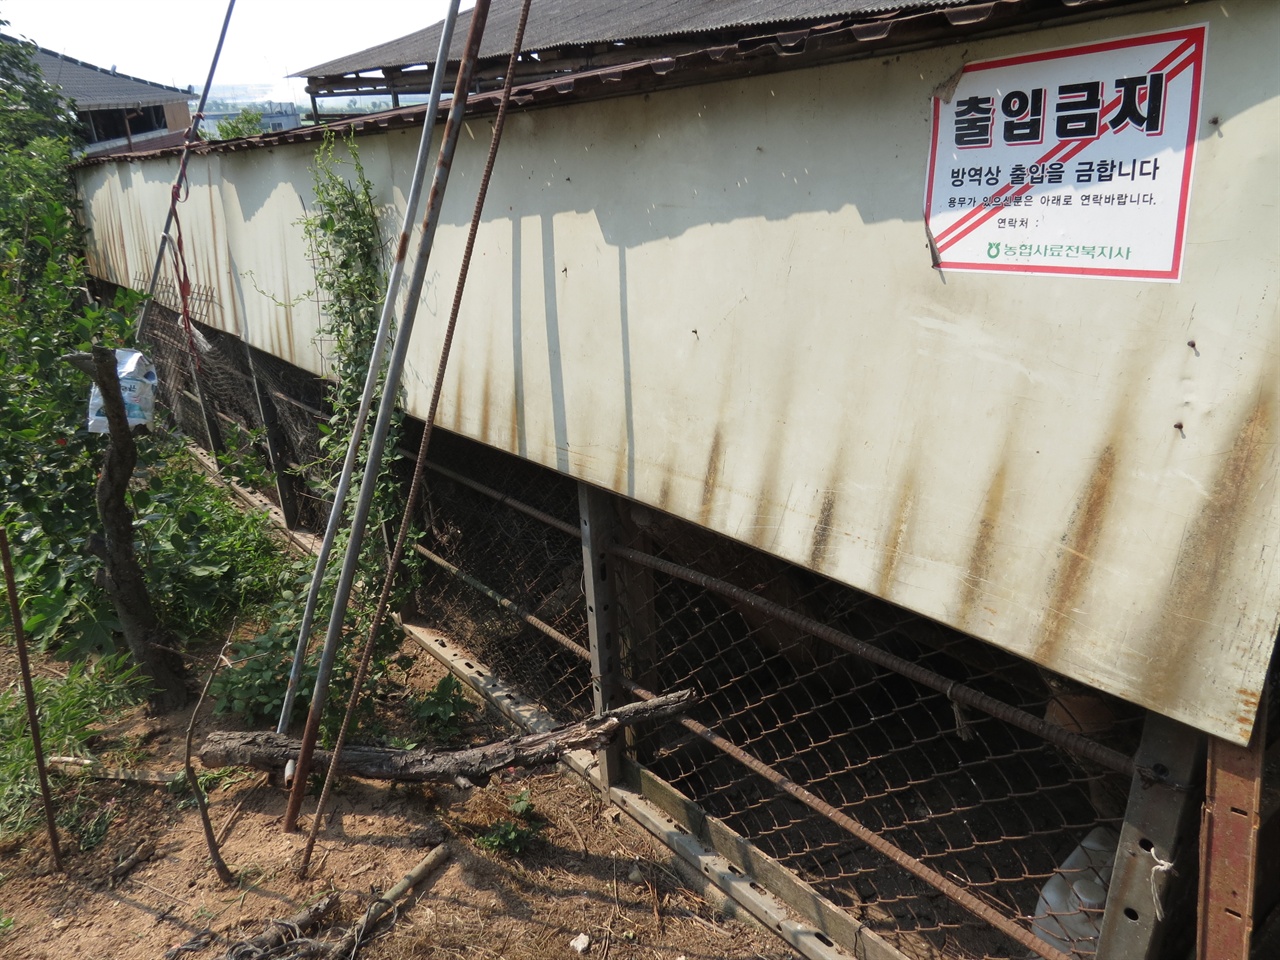  '출입금지' 스티커가 붙은 전주시 모 농가. AI여파로 인해 이따금 닭소리가 들리던 마을이 조용해졌다. 